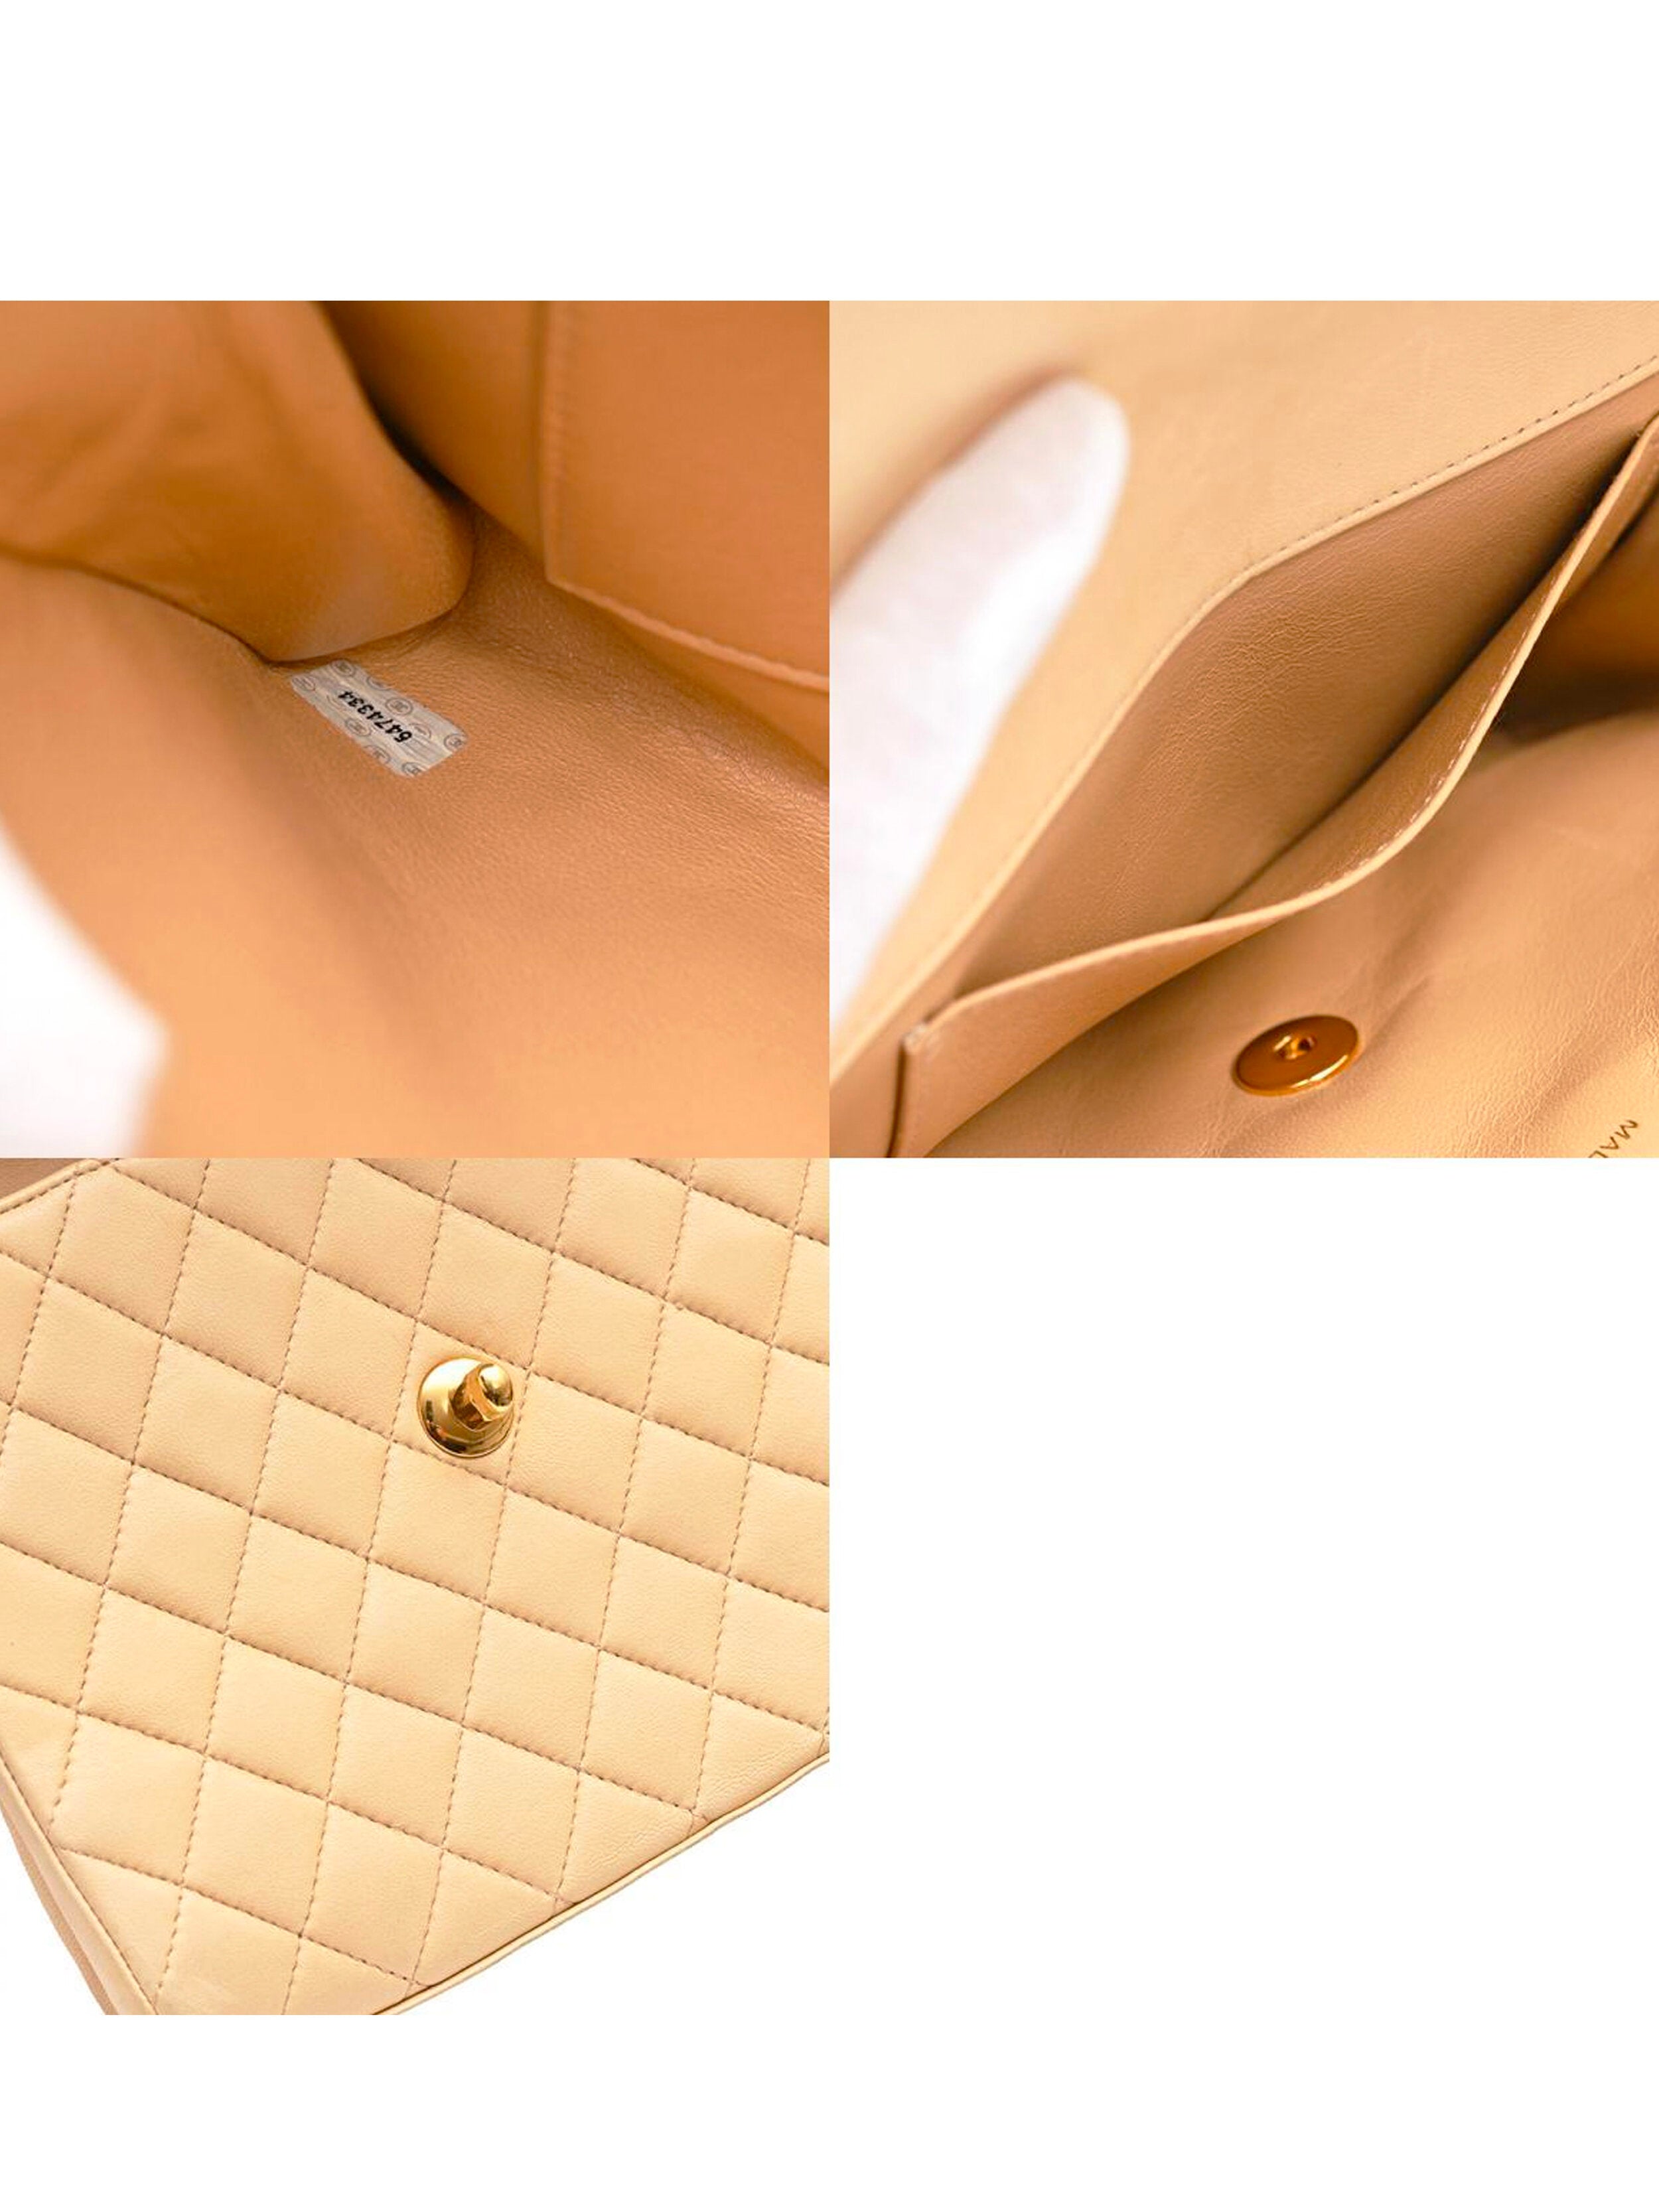 Authentic Chanel Classic Medium Flap Bag Nude Beige